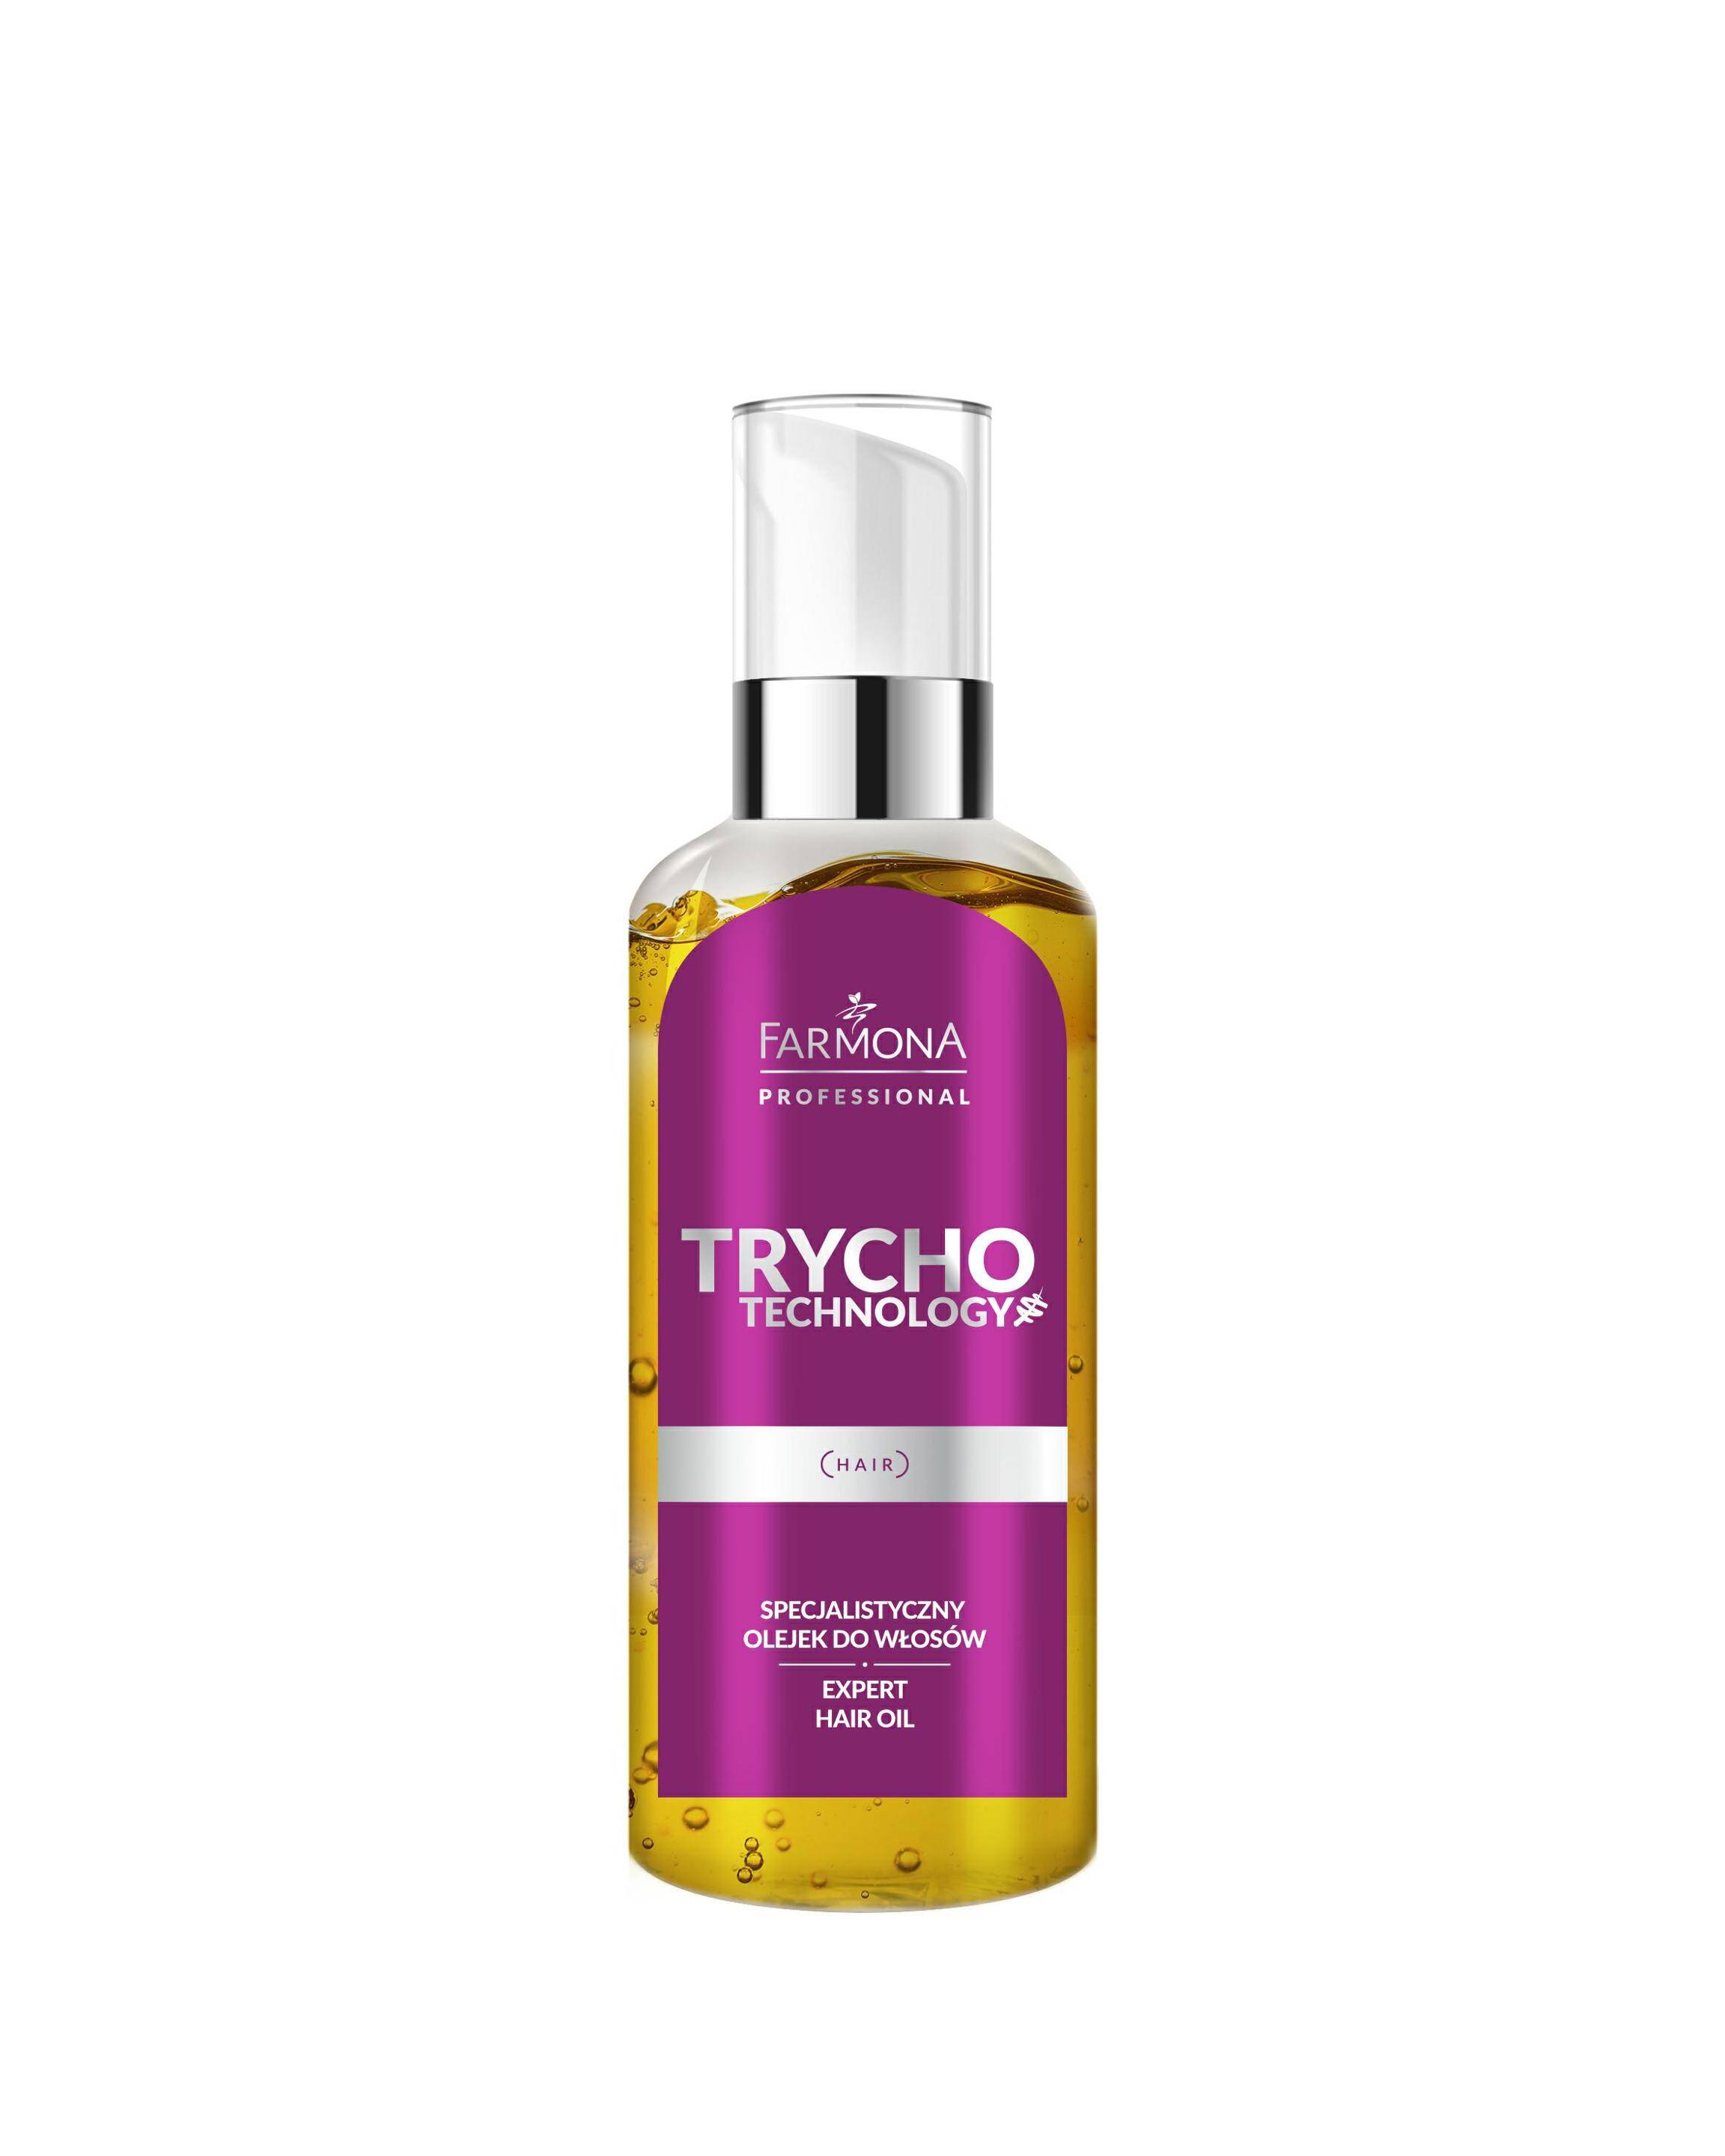 Farmona TRYCHO TECHNOLOGY Specjalistyczny olejek do włosów 50ml